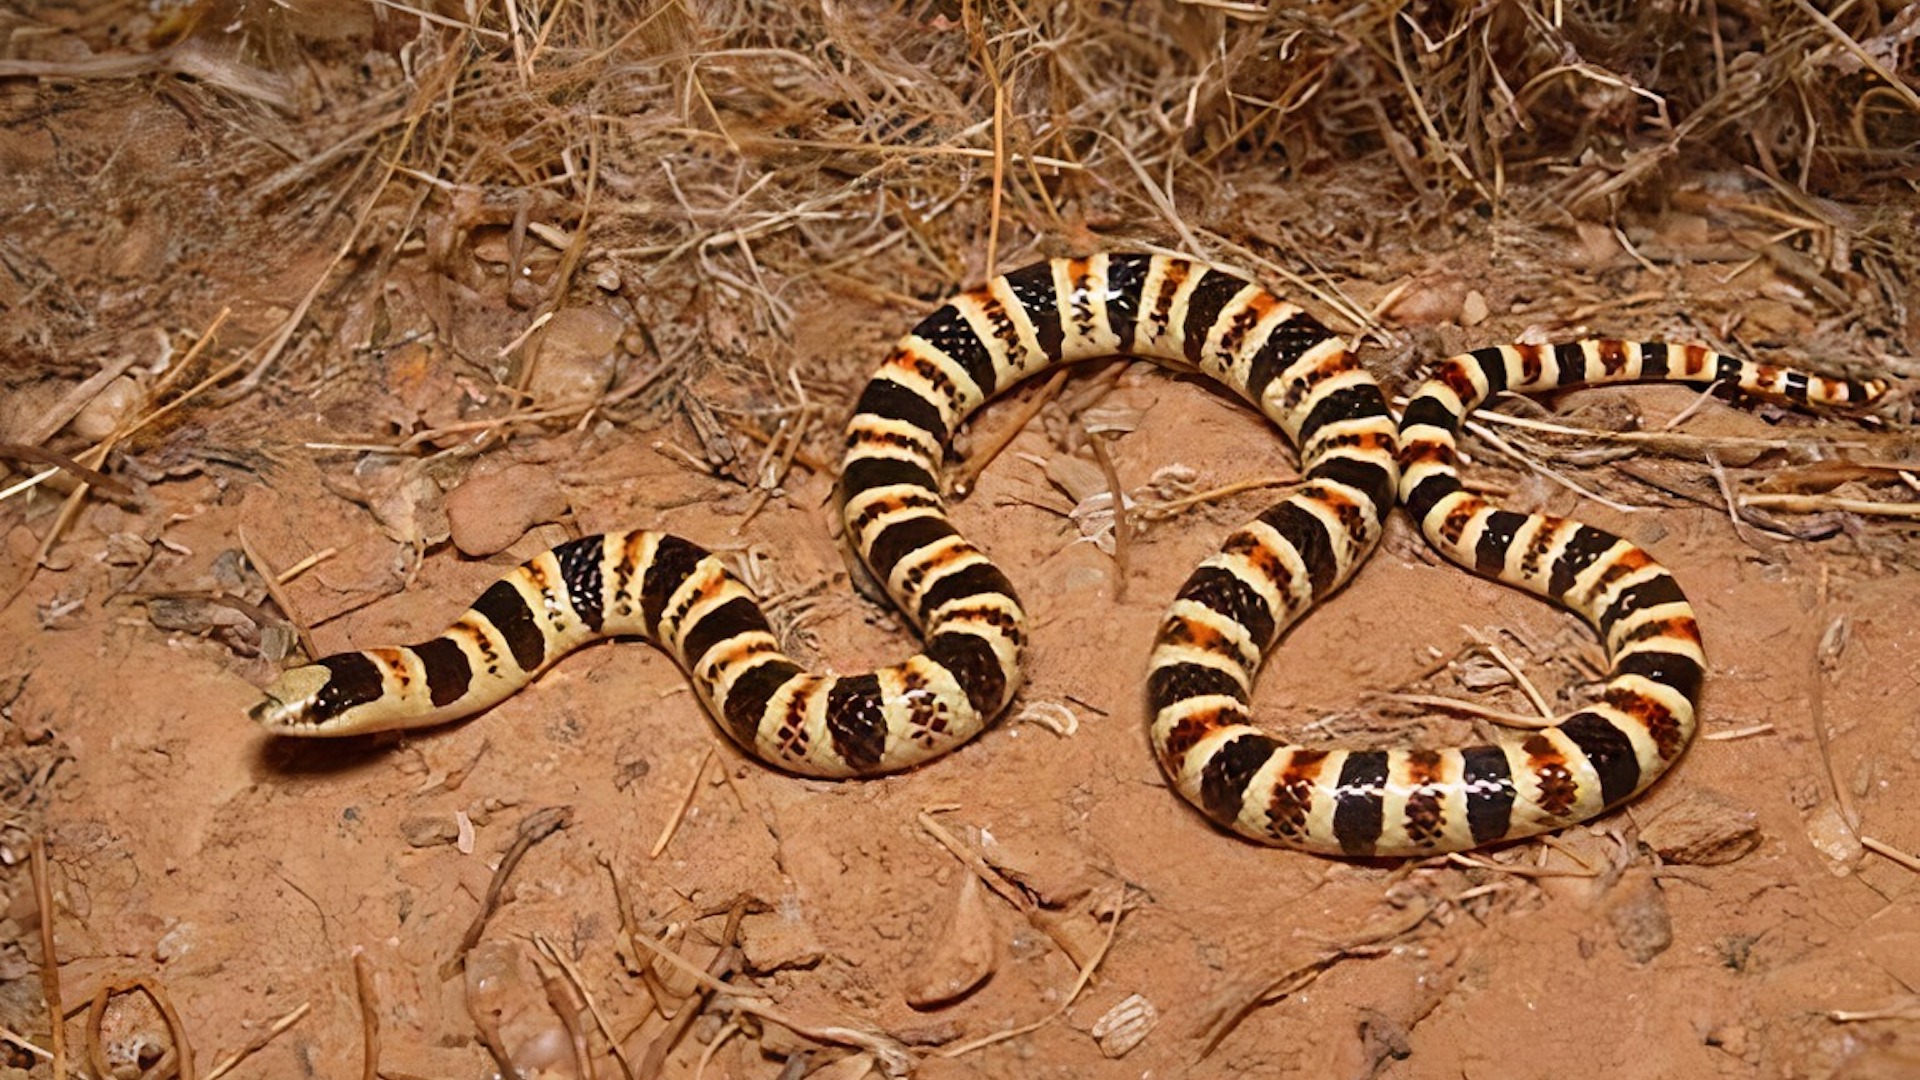 Tucson shovel-nosed snake.